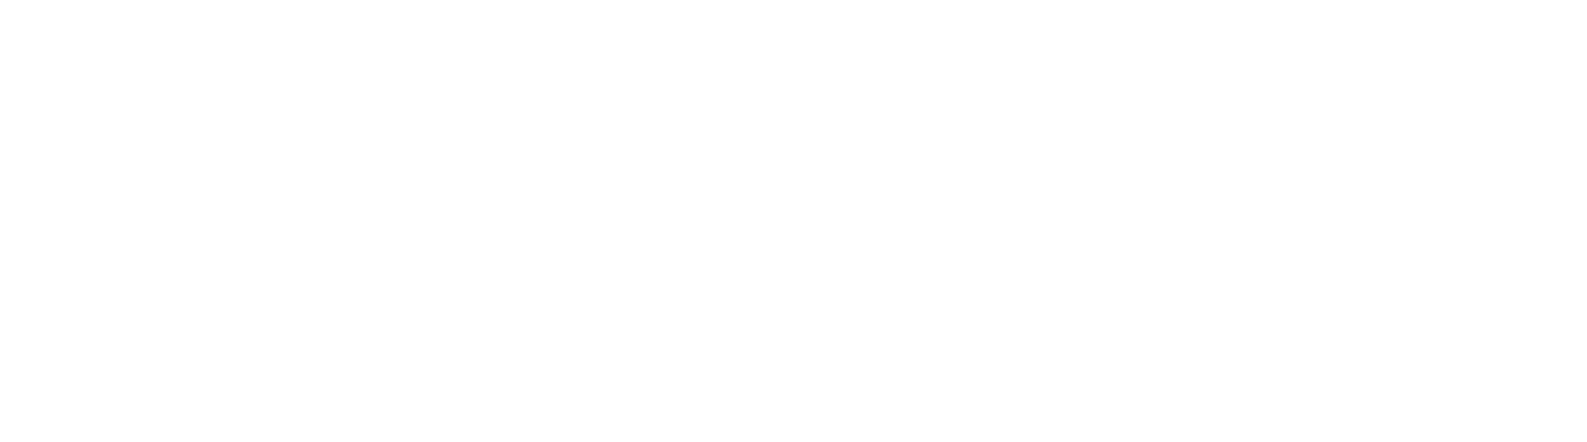 Korea Gas logo large for dark backgrounds (transparent PNG)